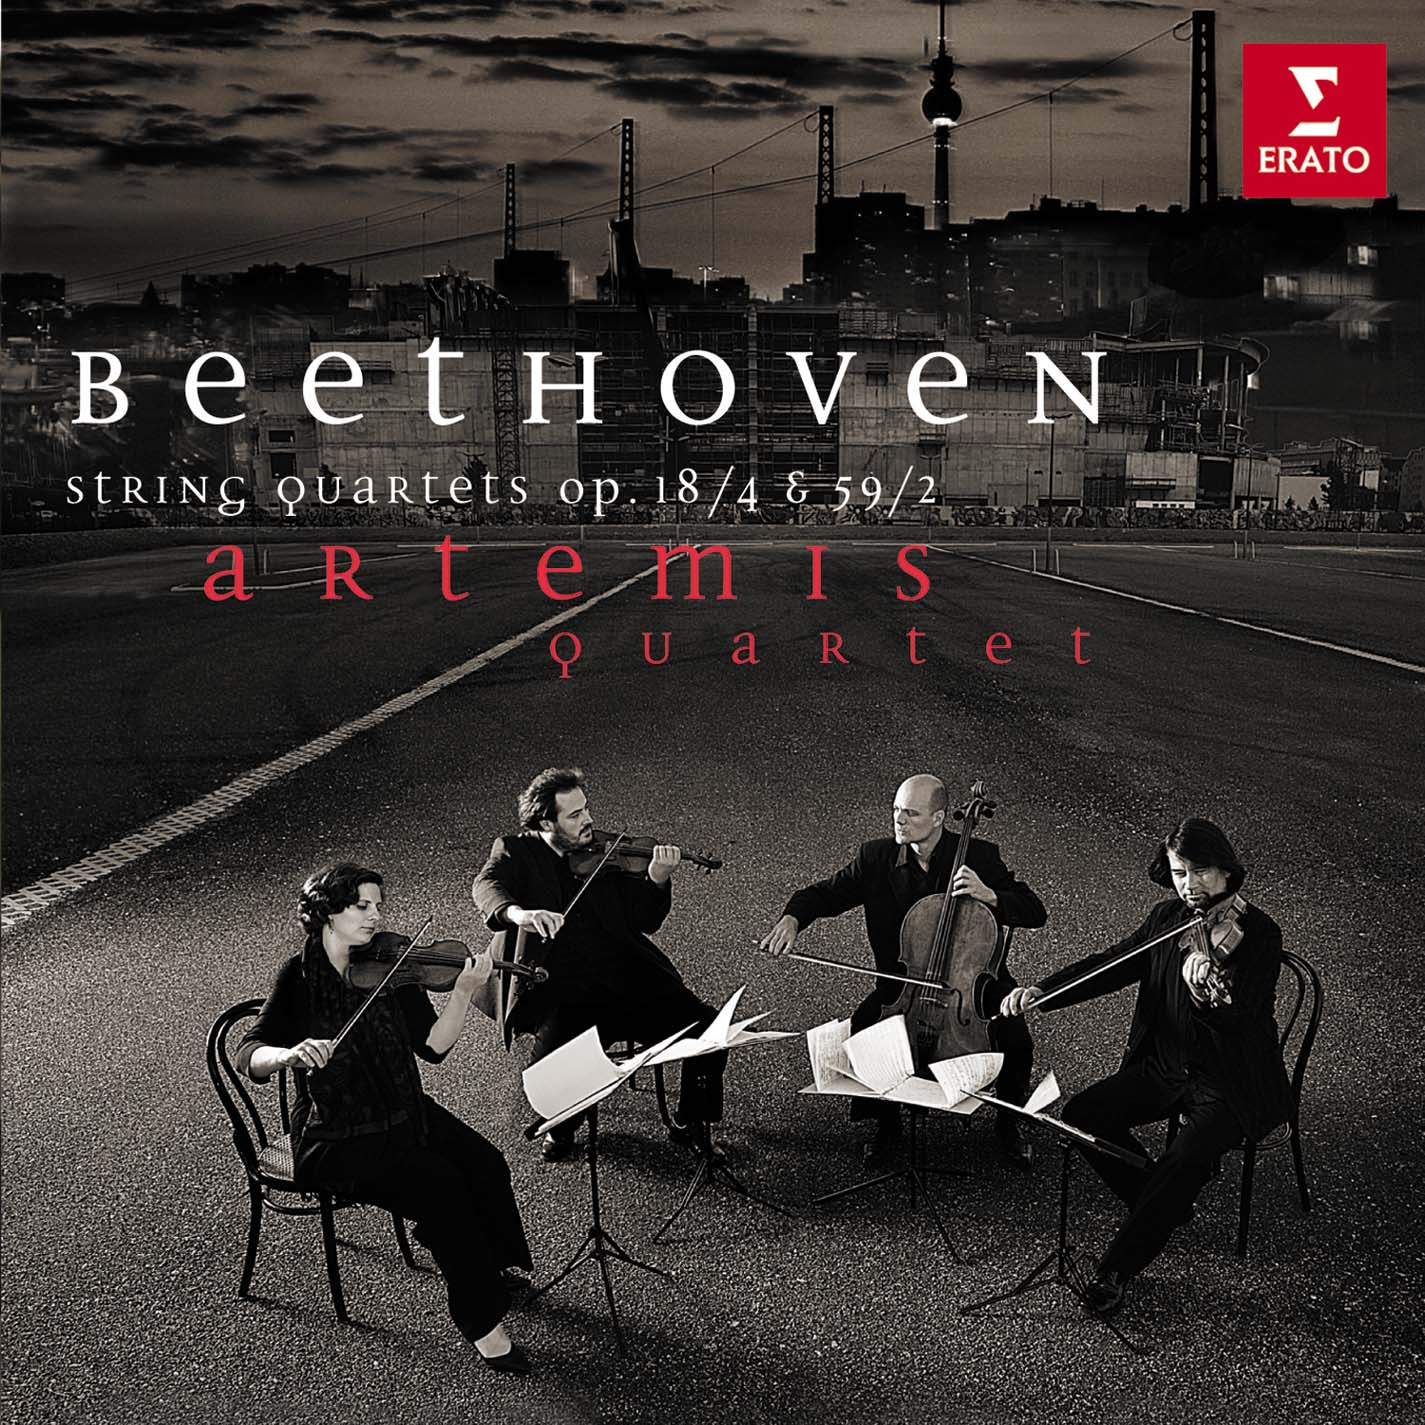 Beethoven String Quartets Op. 18/4 & Op. 59/2